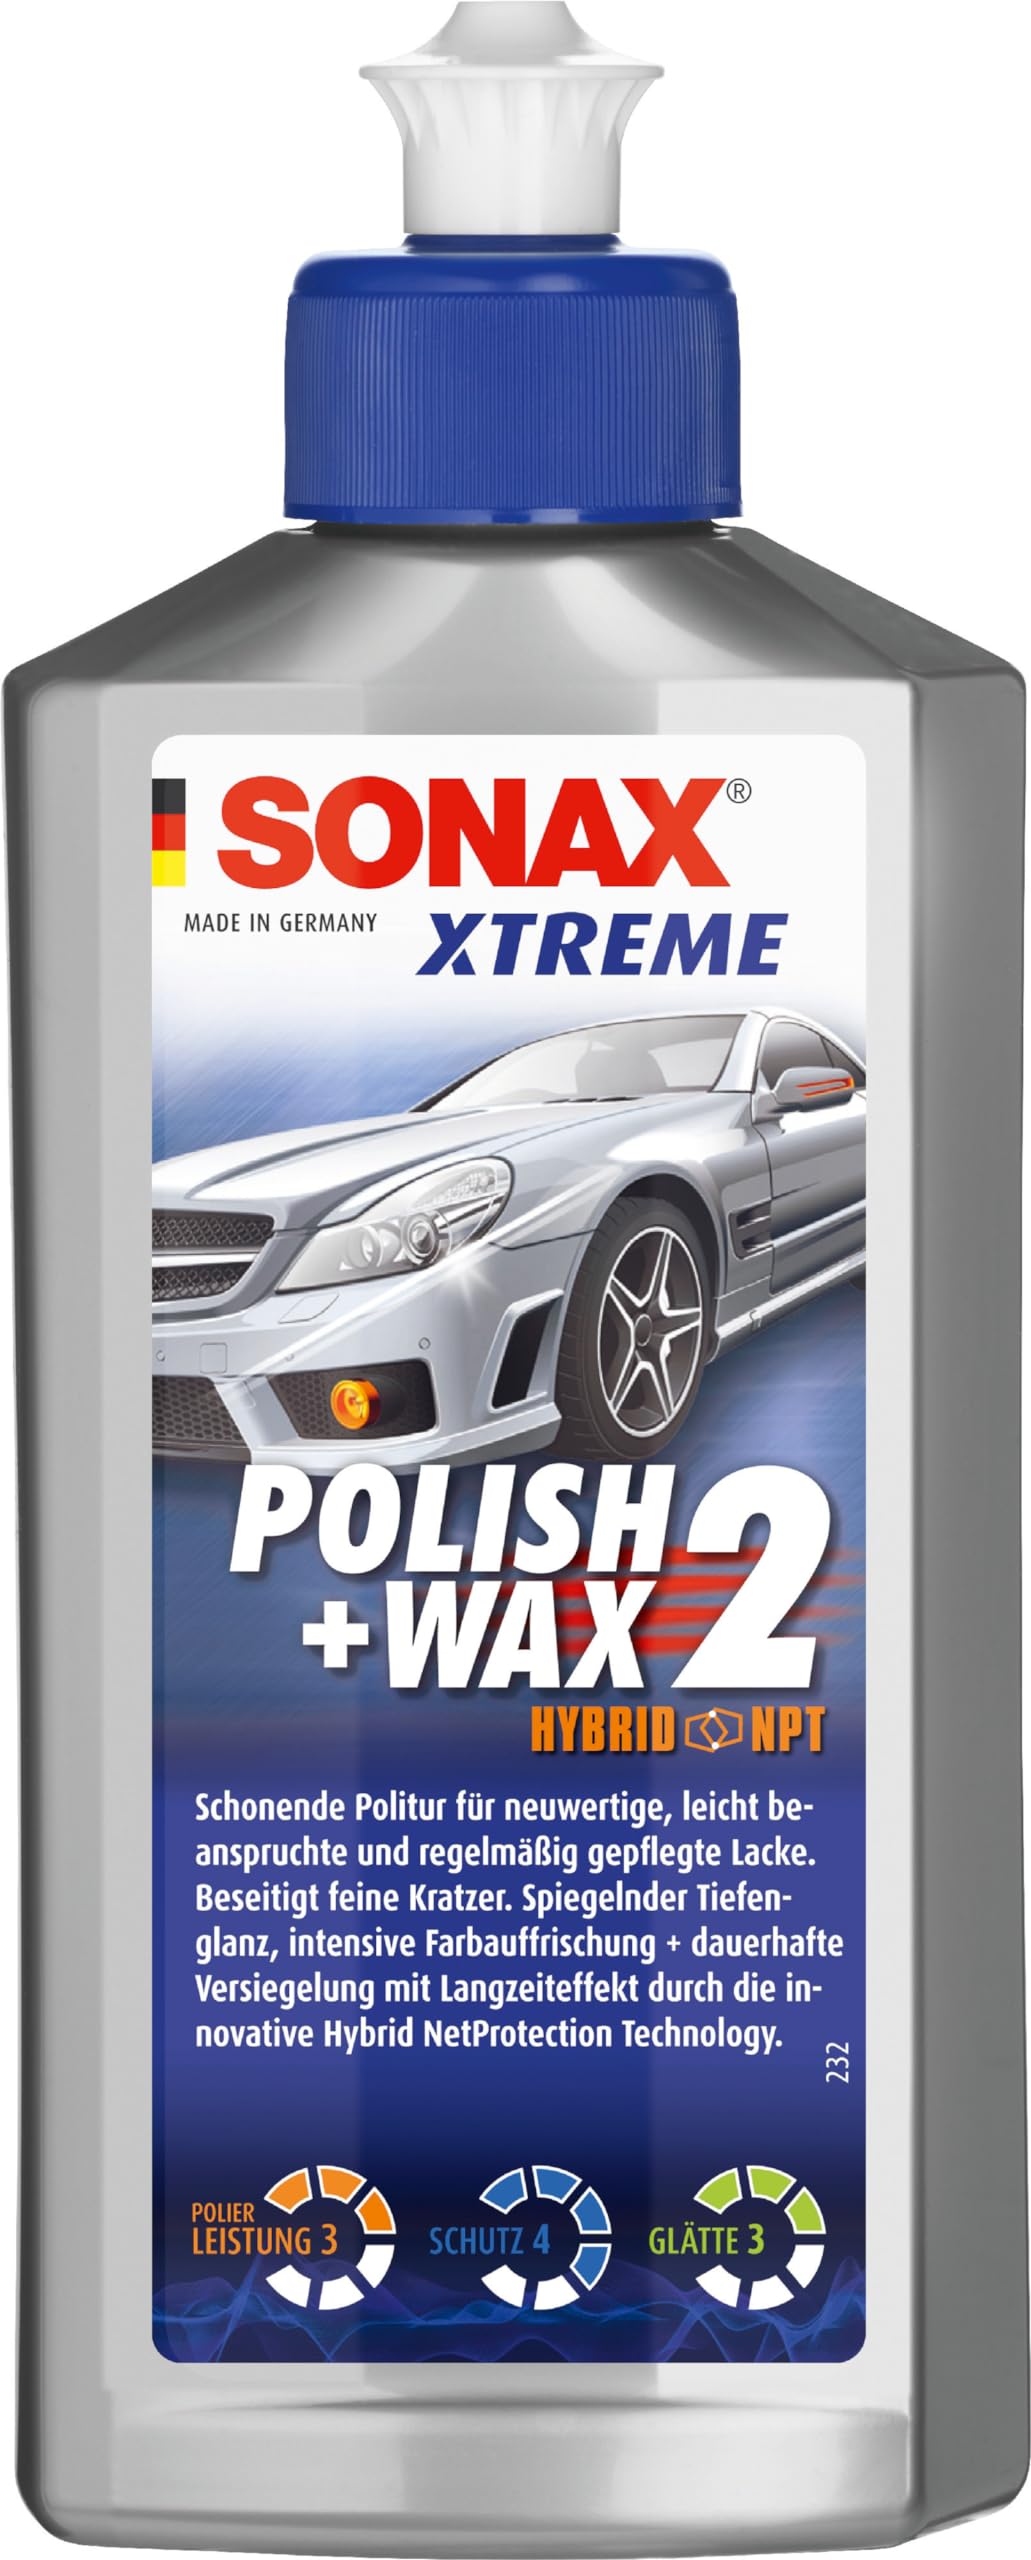 SONAX XTREME Polish+Wax 2 Hybrid NPT (250 ml) schonende Politur mit mittlerer Wirkung für regelmäßig gepflegte Lacke | Art-Nr. 02071000 von SONAX